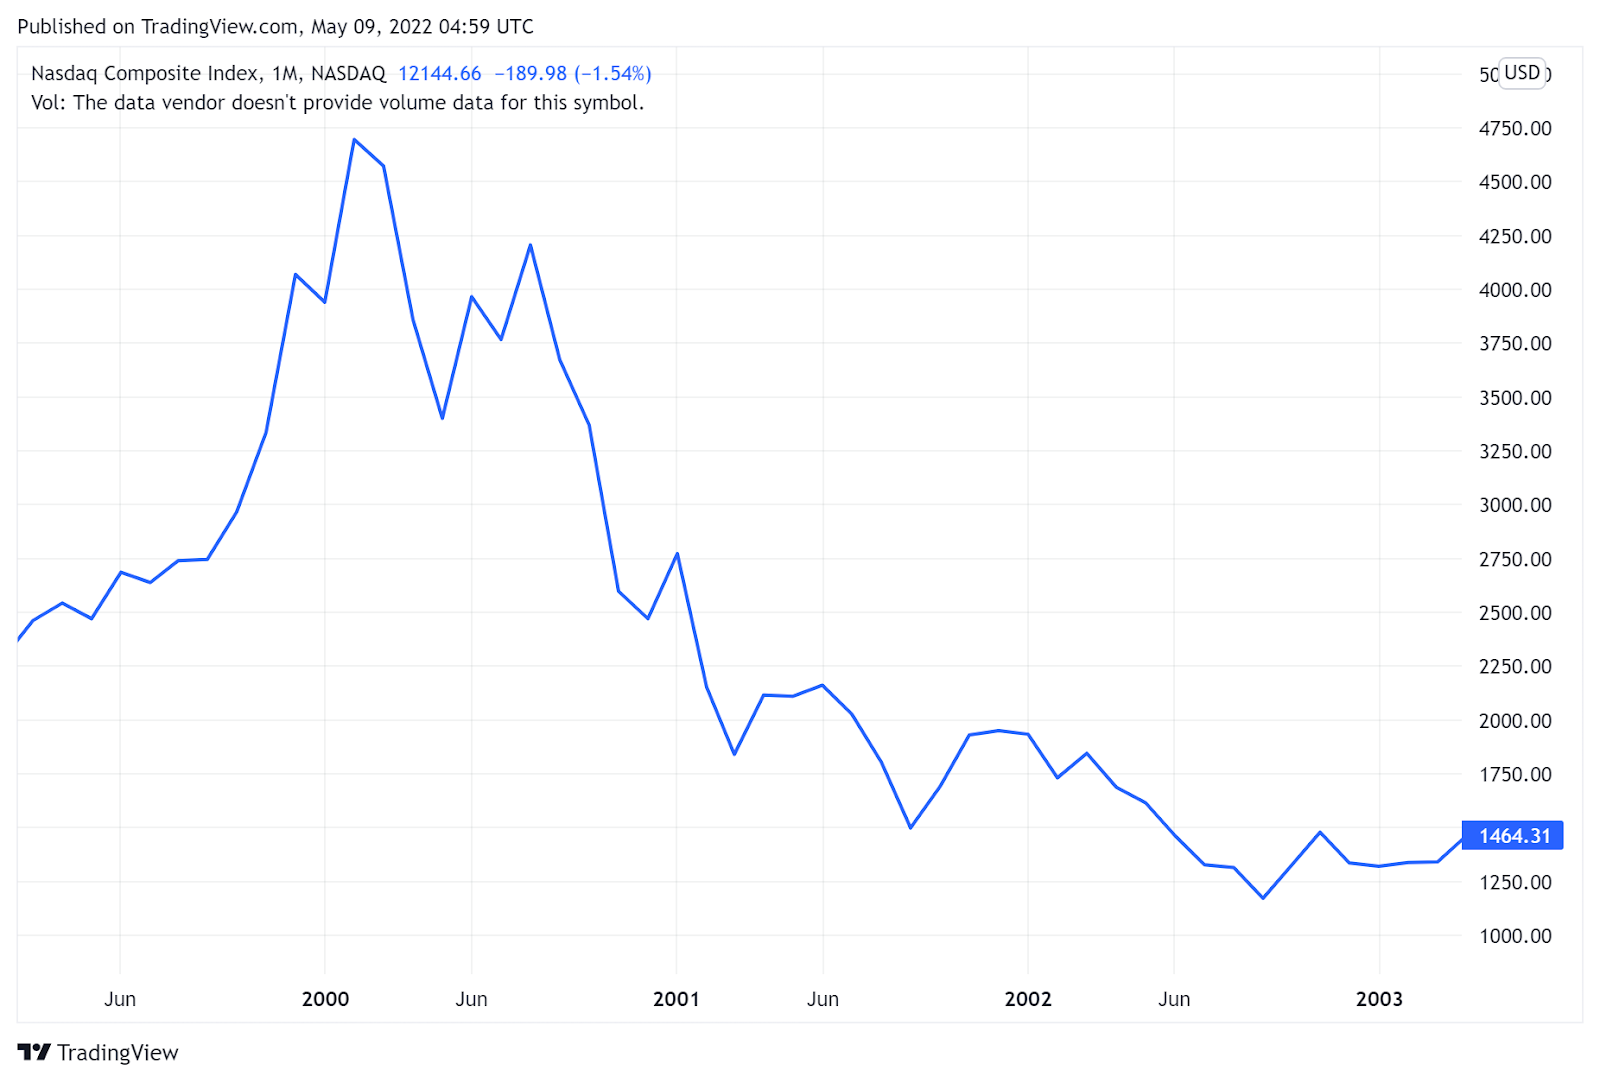 Sự sụt giảm nghiêm trọng của chỉ số NASDAQ sau bong bóng